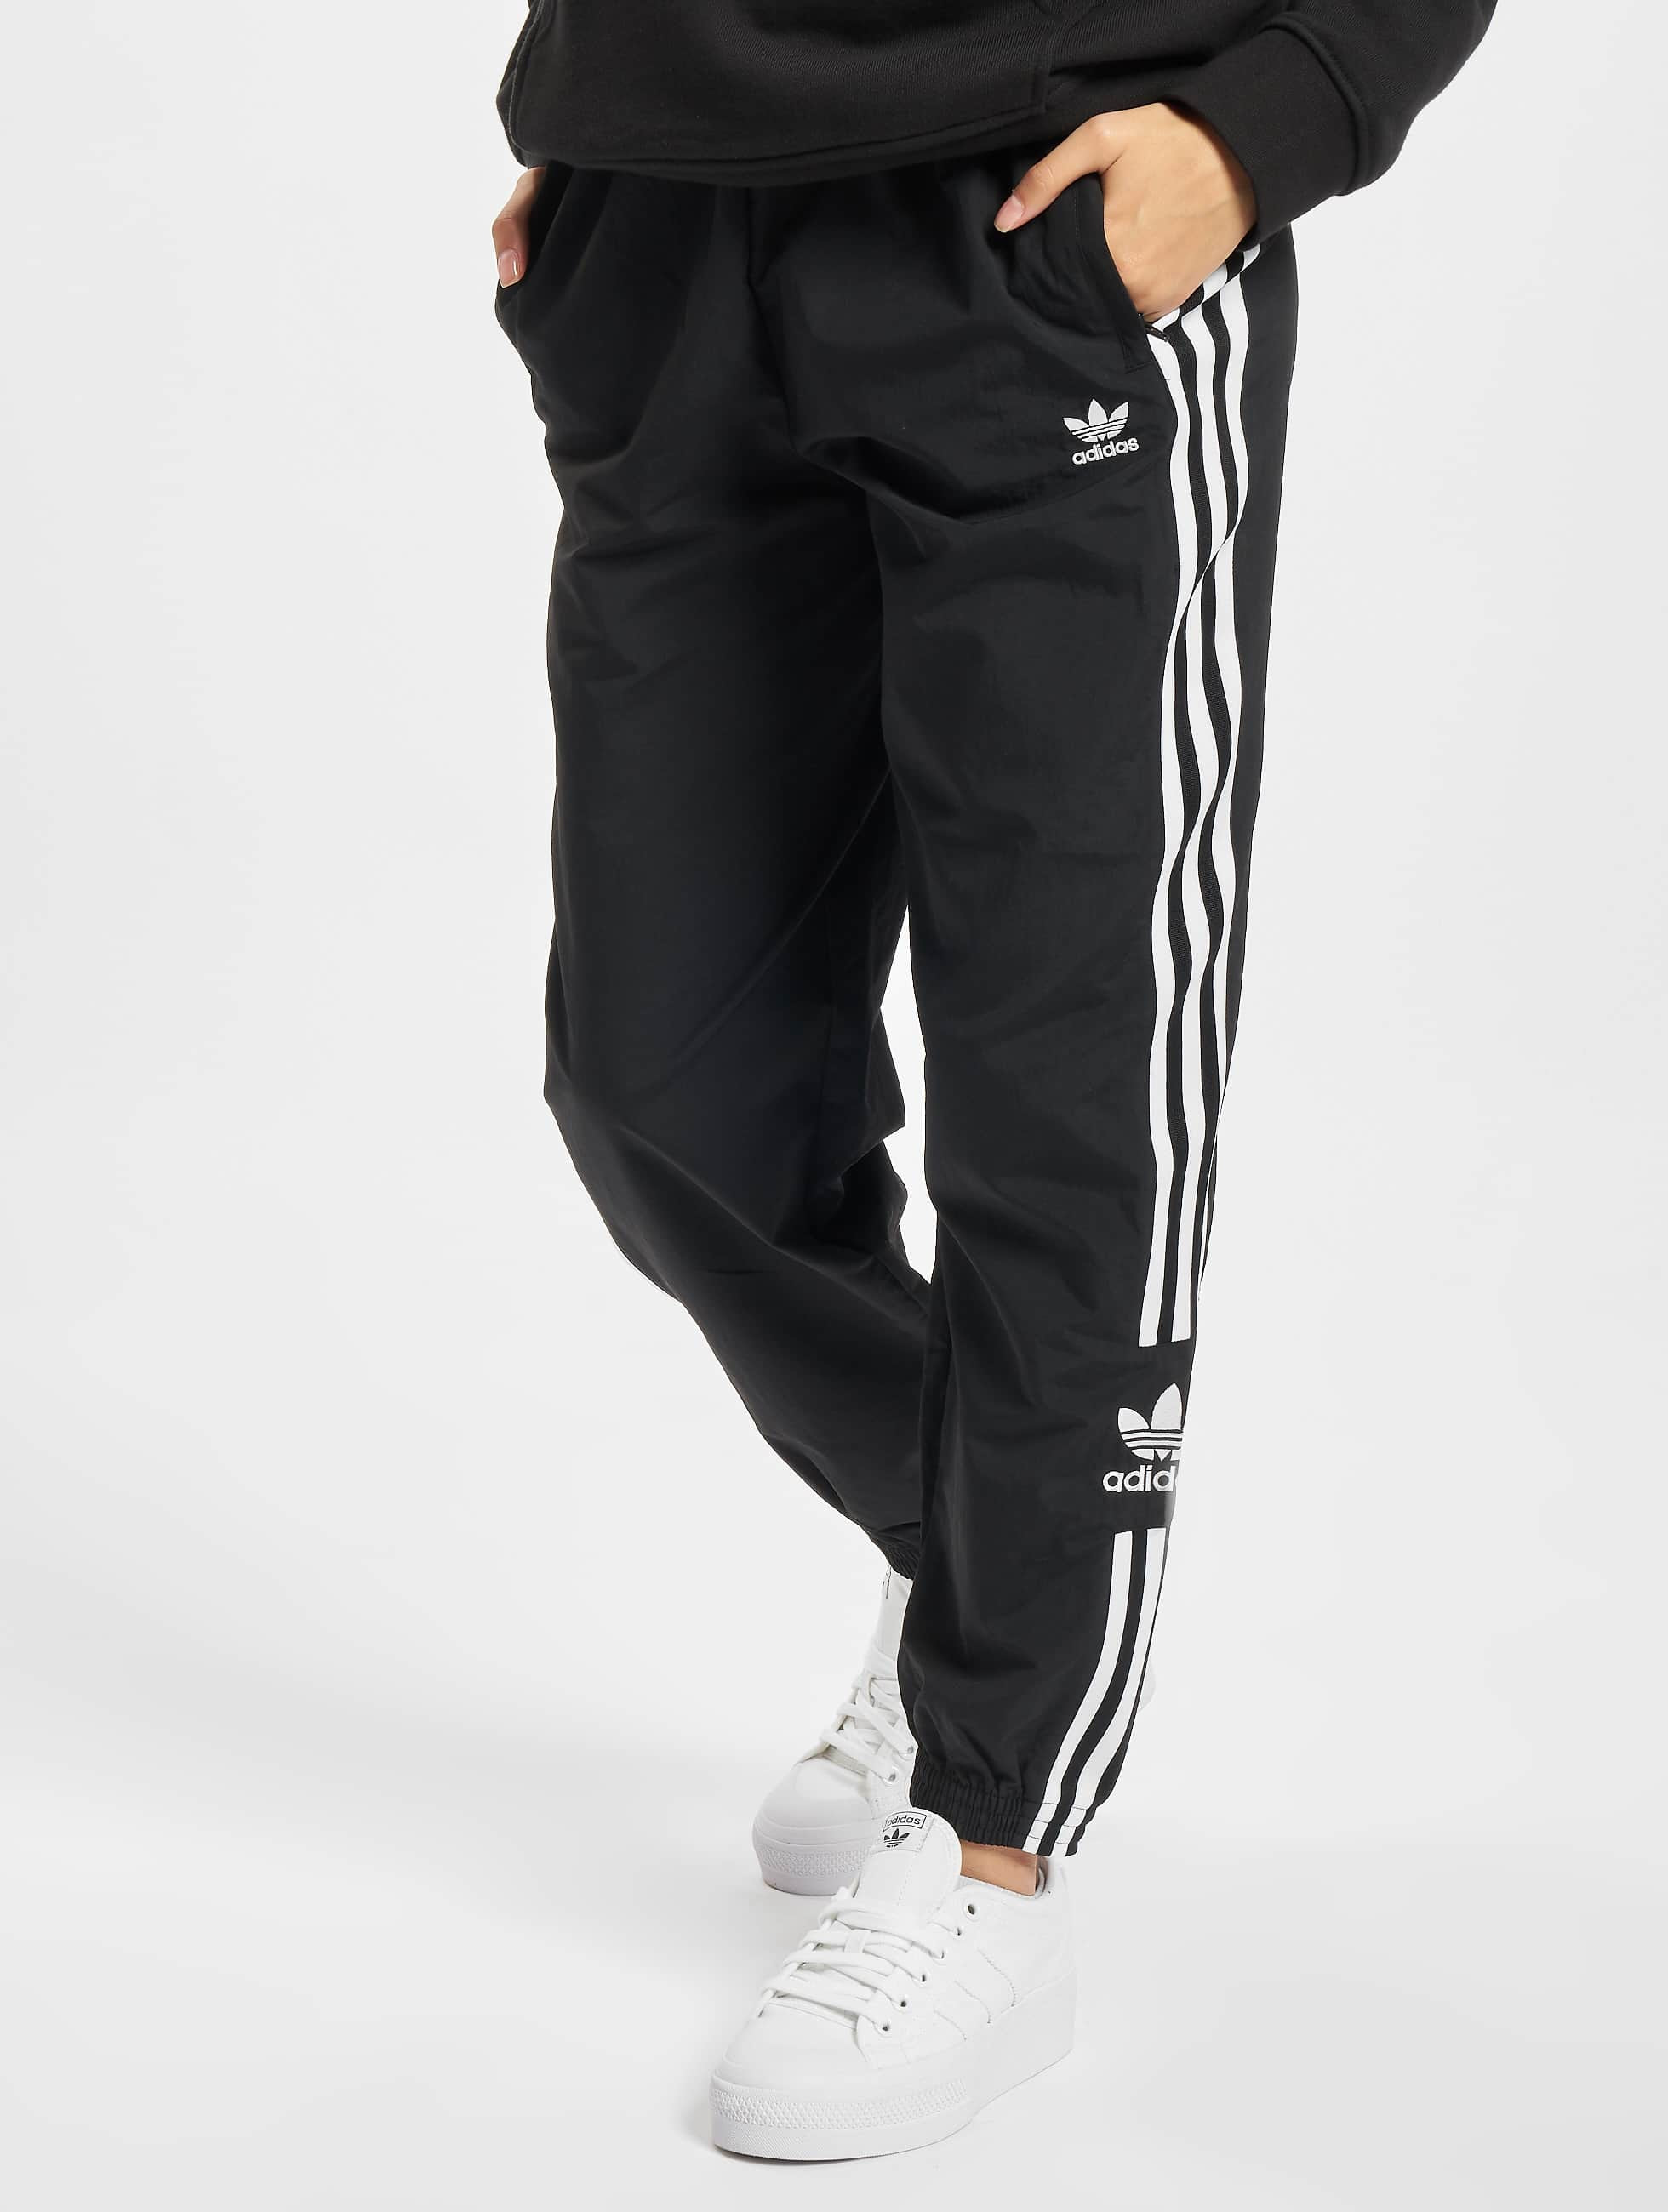 Verraad Maori expositie adidas Originals broek / joggingbroek Track in zwart 835655